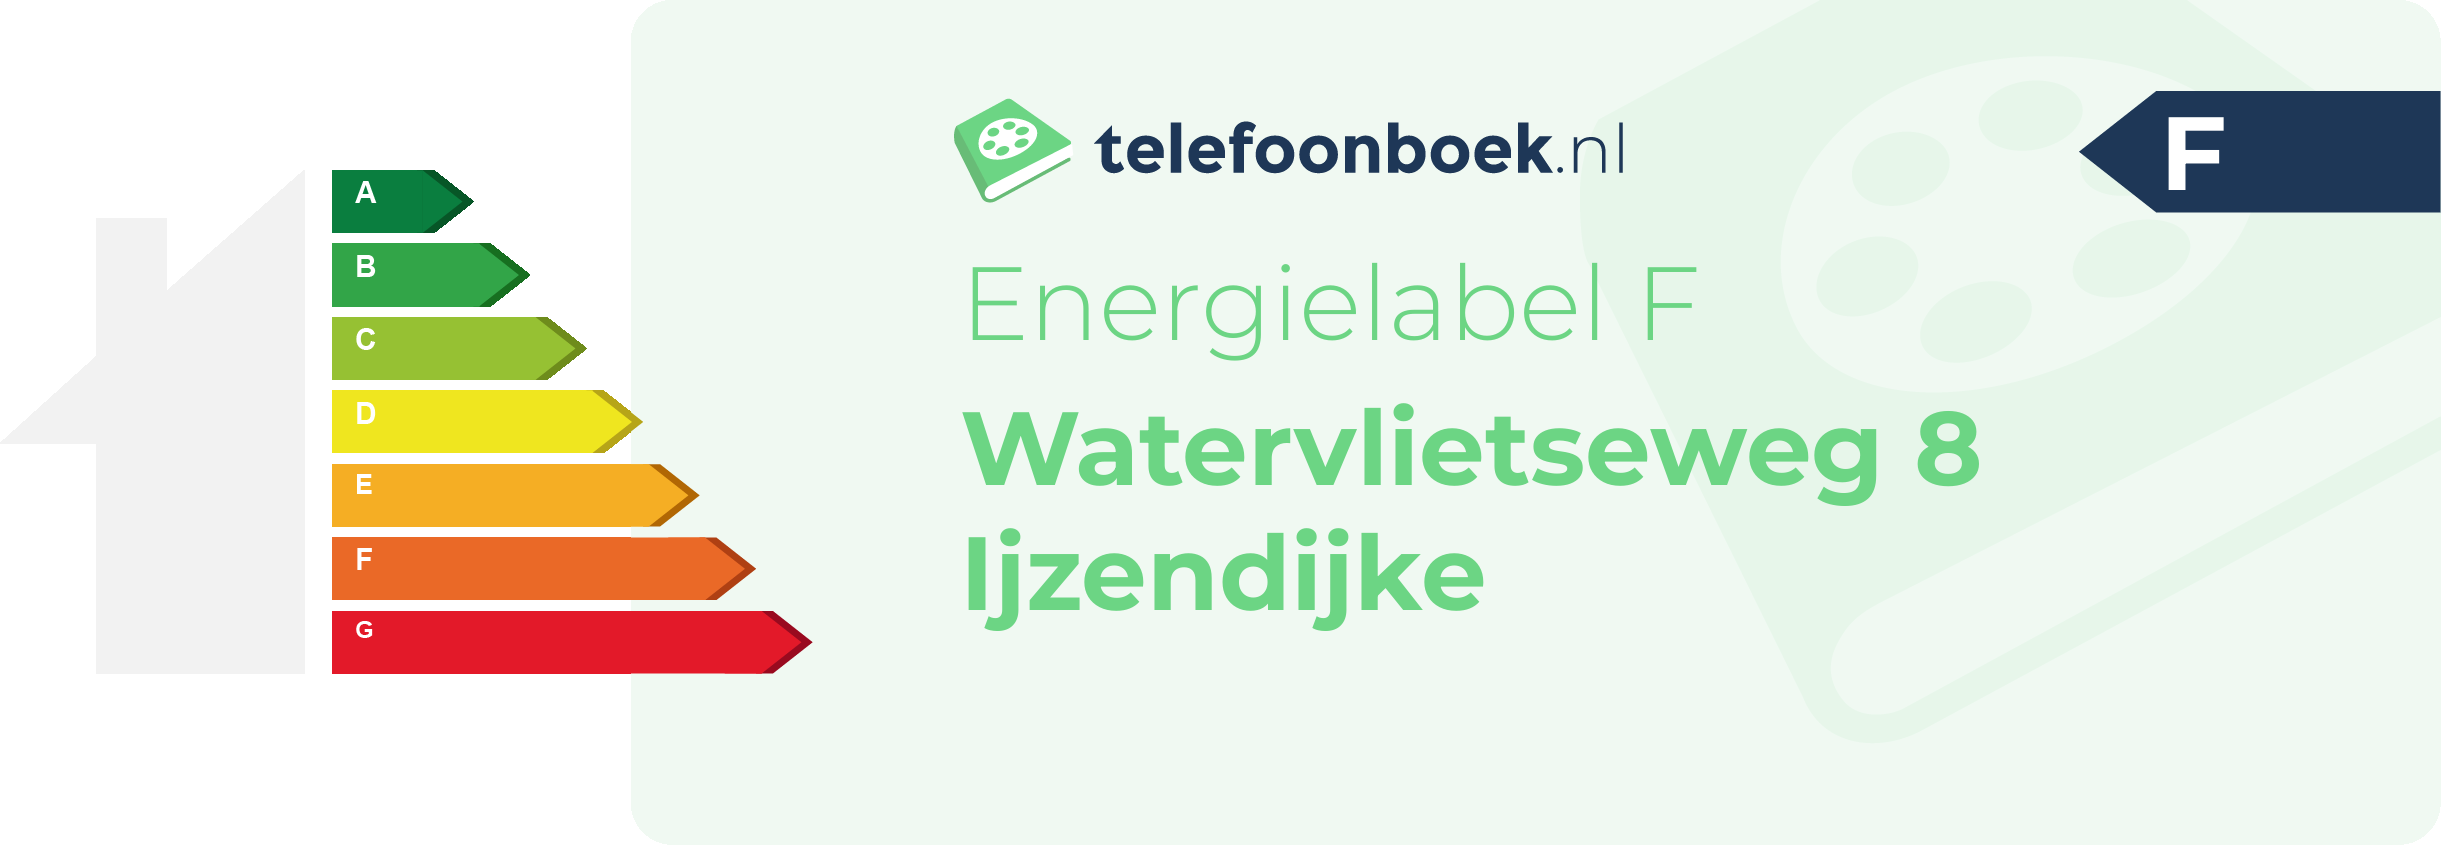 Energielabel Watervlietseweg 8 Ijzendijke